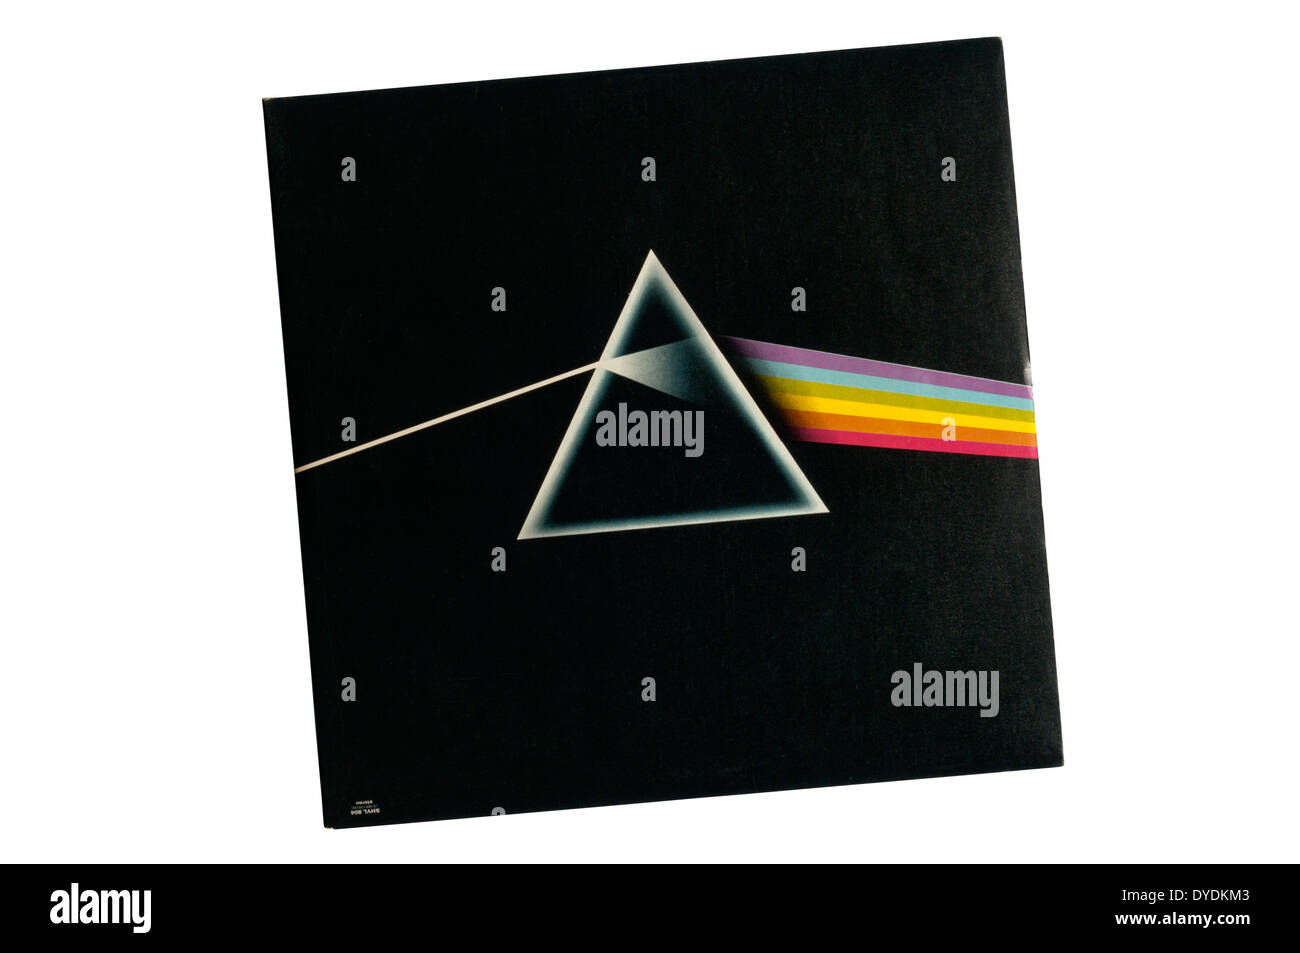 El lado oscuro de la Luna fue el 8º álbum de estudio de la banda de rock prog inglesa Pink Floyd, lanzado en 1973. Cubrir por Hipgnosis. Foto de stock